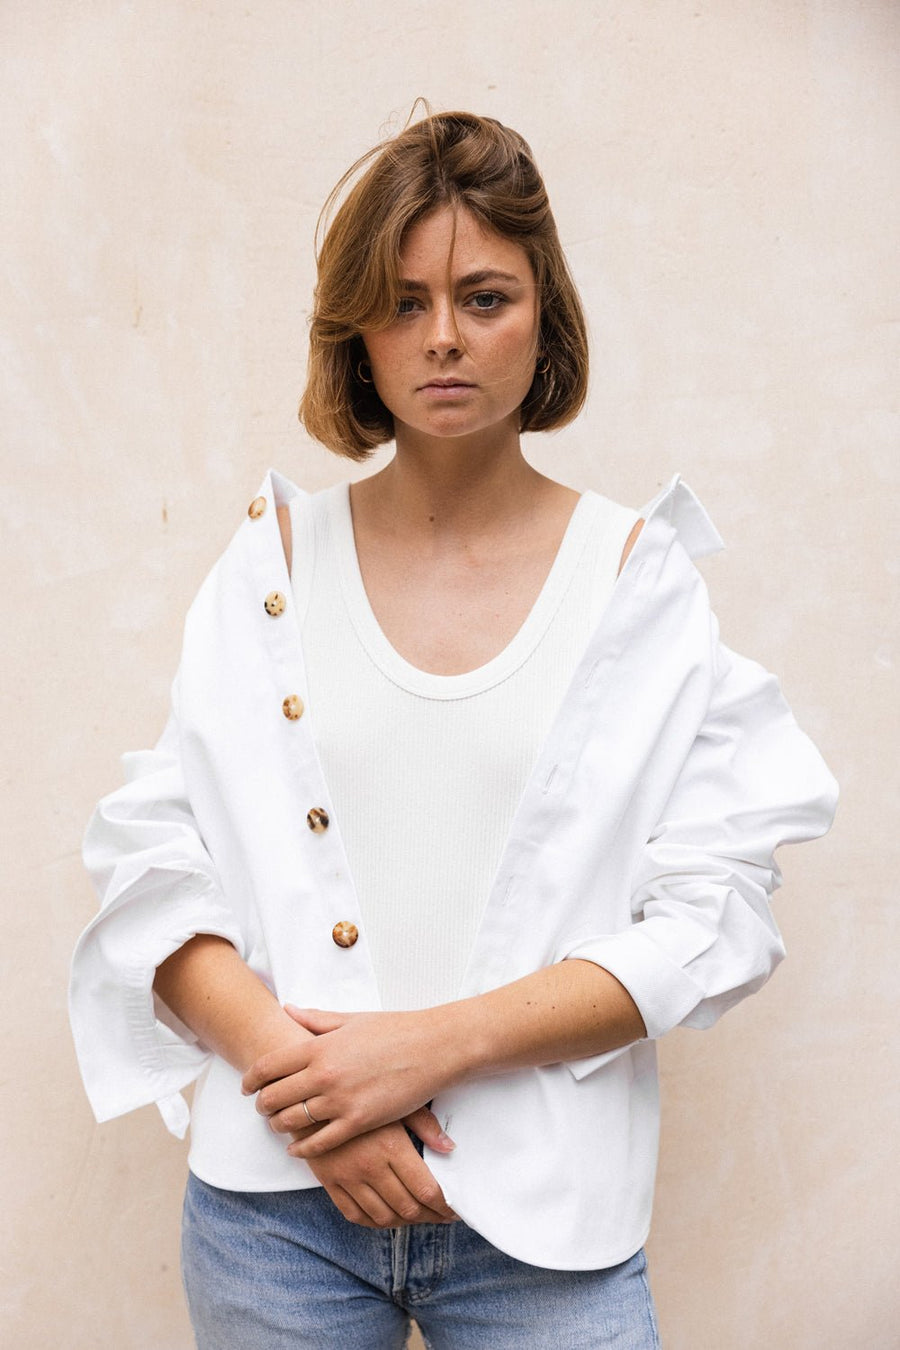 BOURRIENNE - Jean Jour Denim Overshirt in White